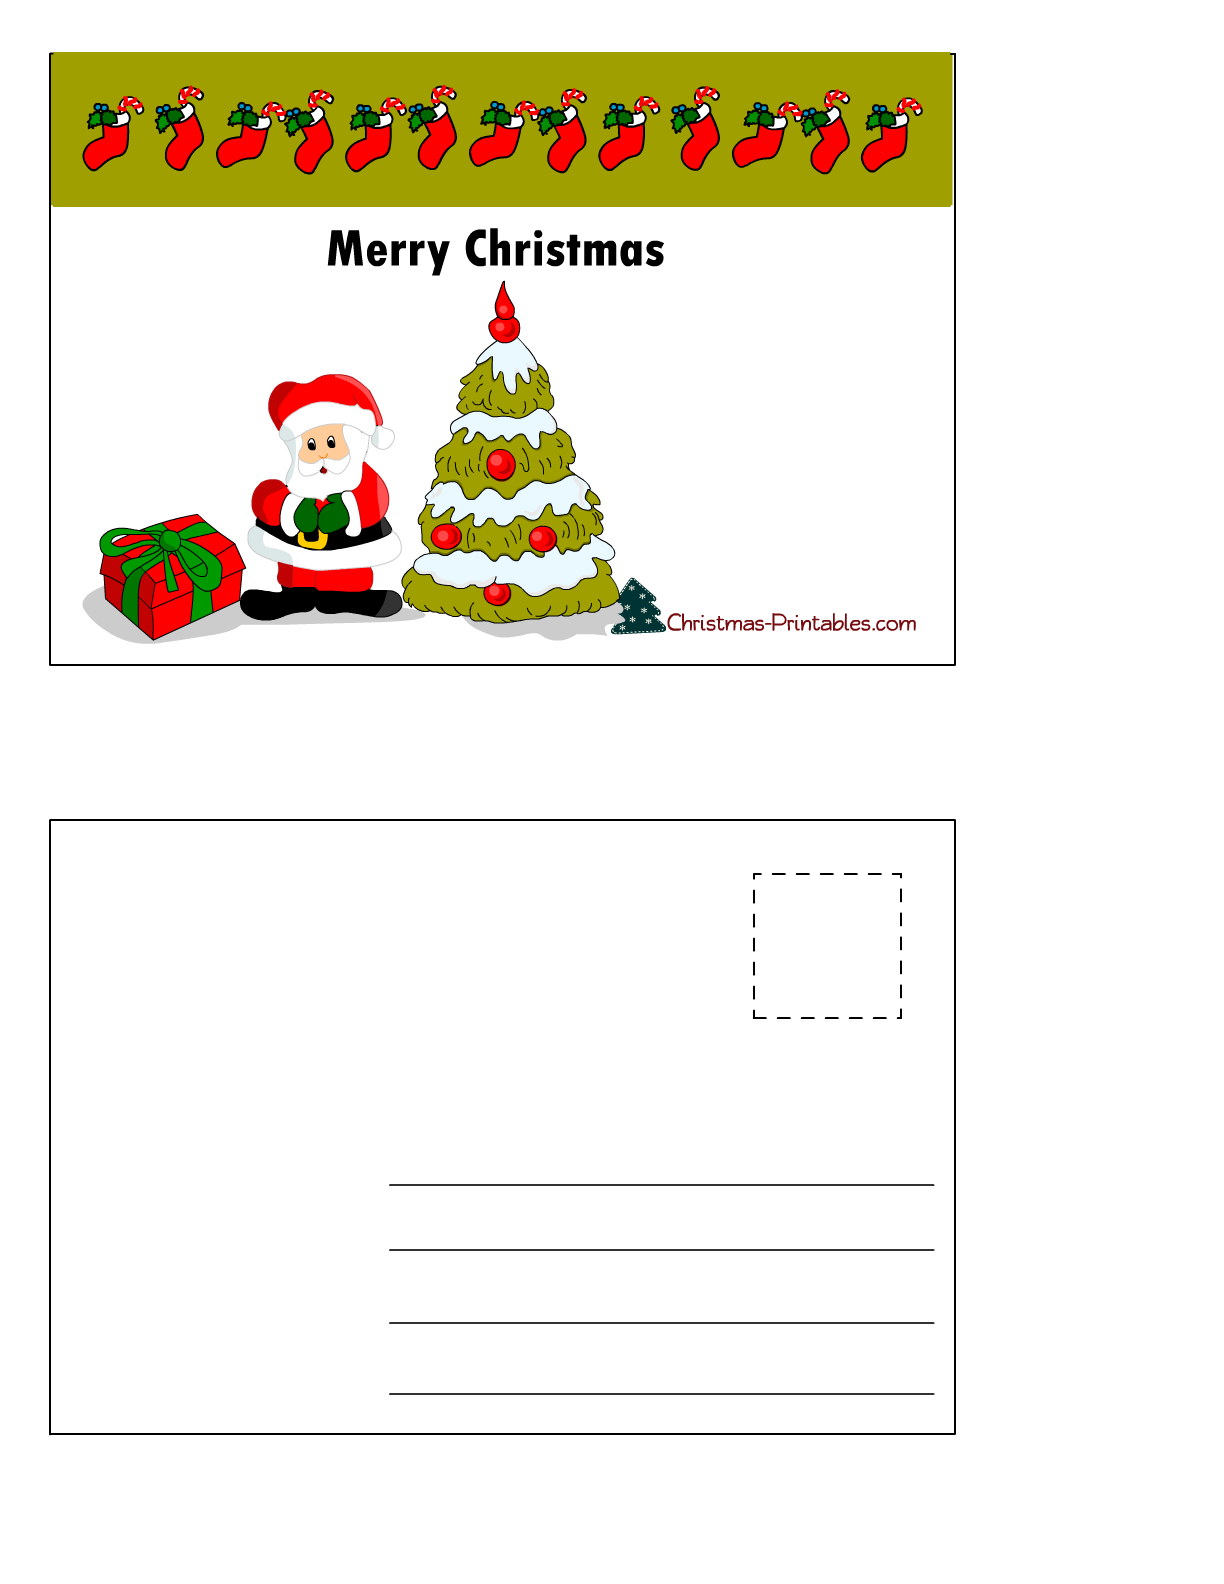 Free Printable Christmas Postcards